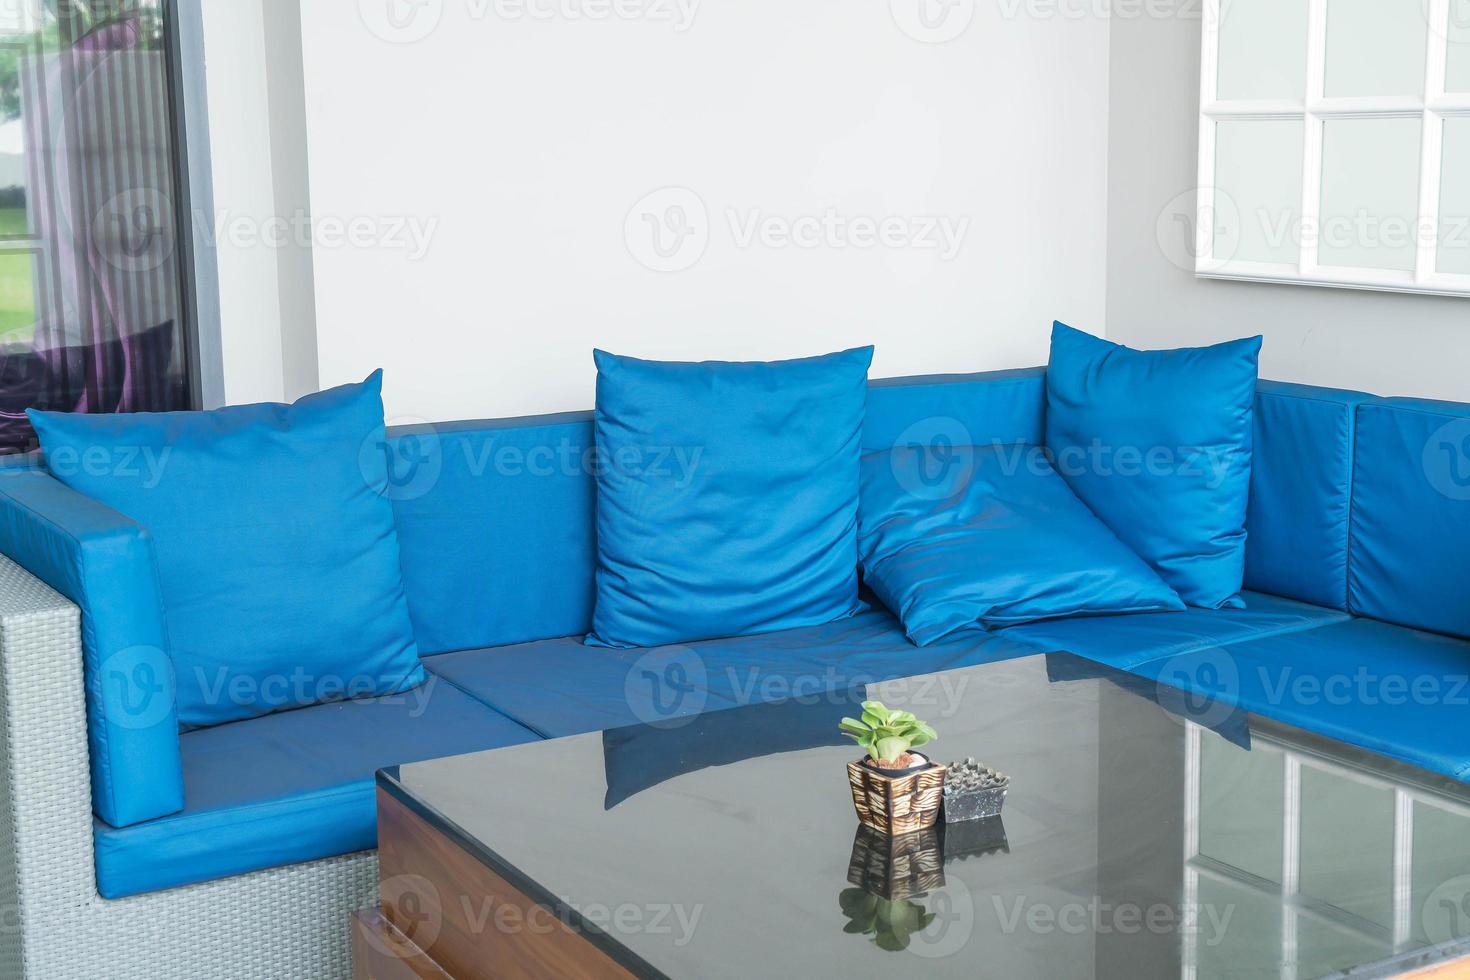 linda almofada luxuosa na decoração do sofá no interior da sala de estar foto